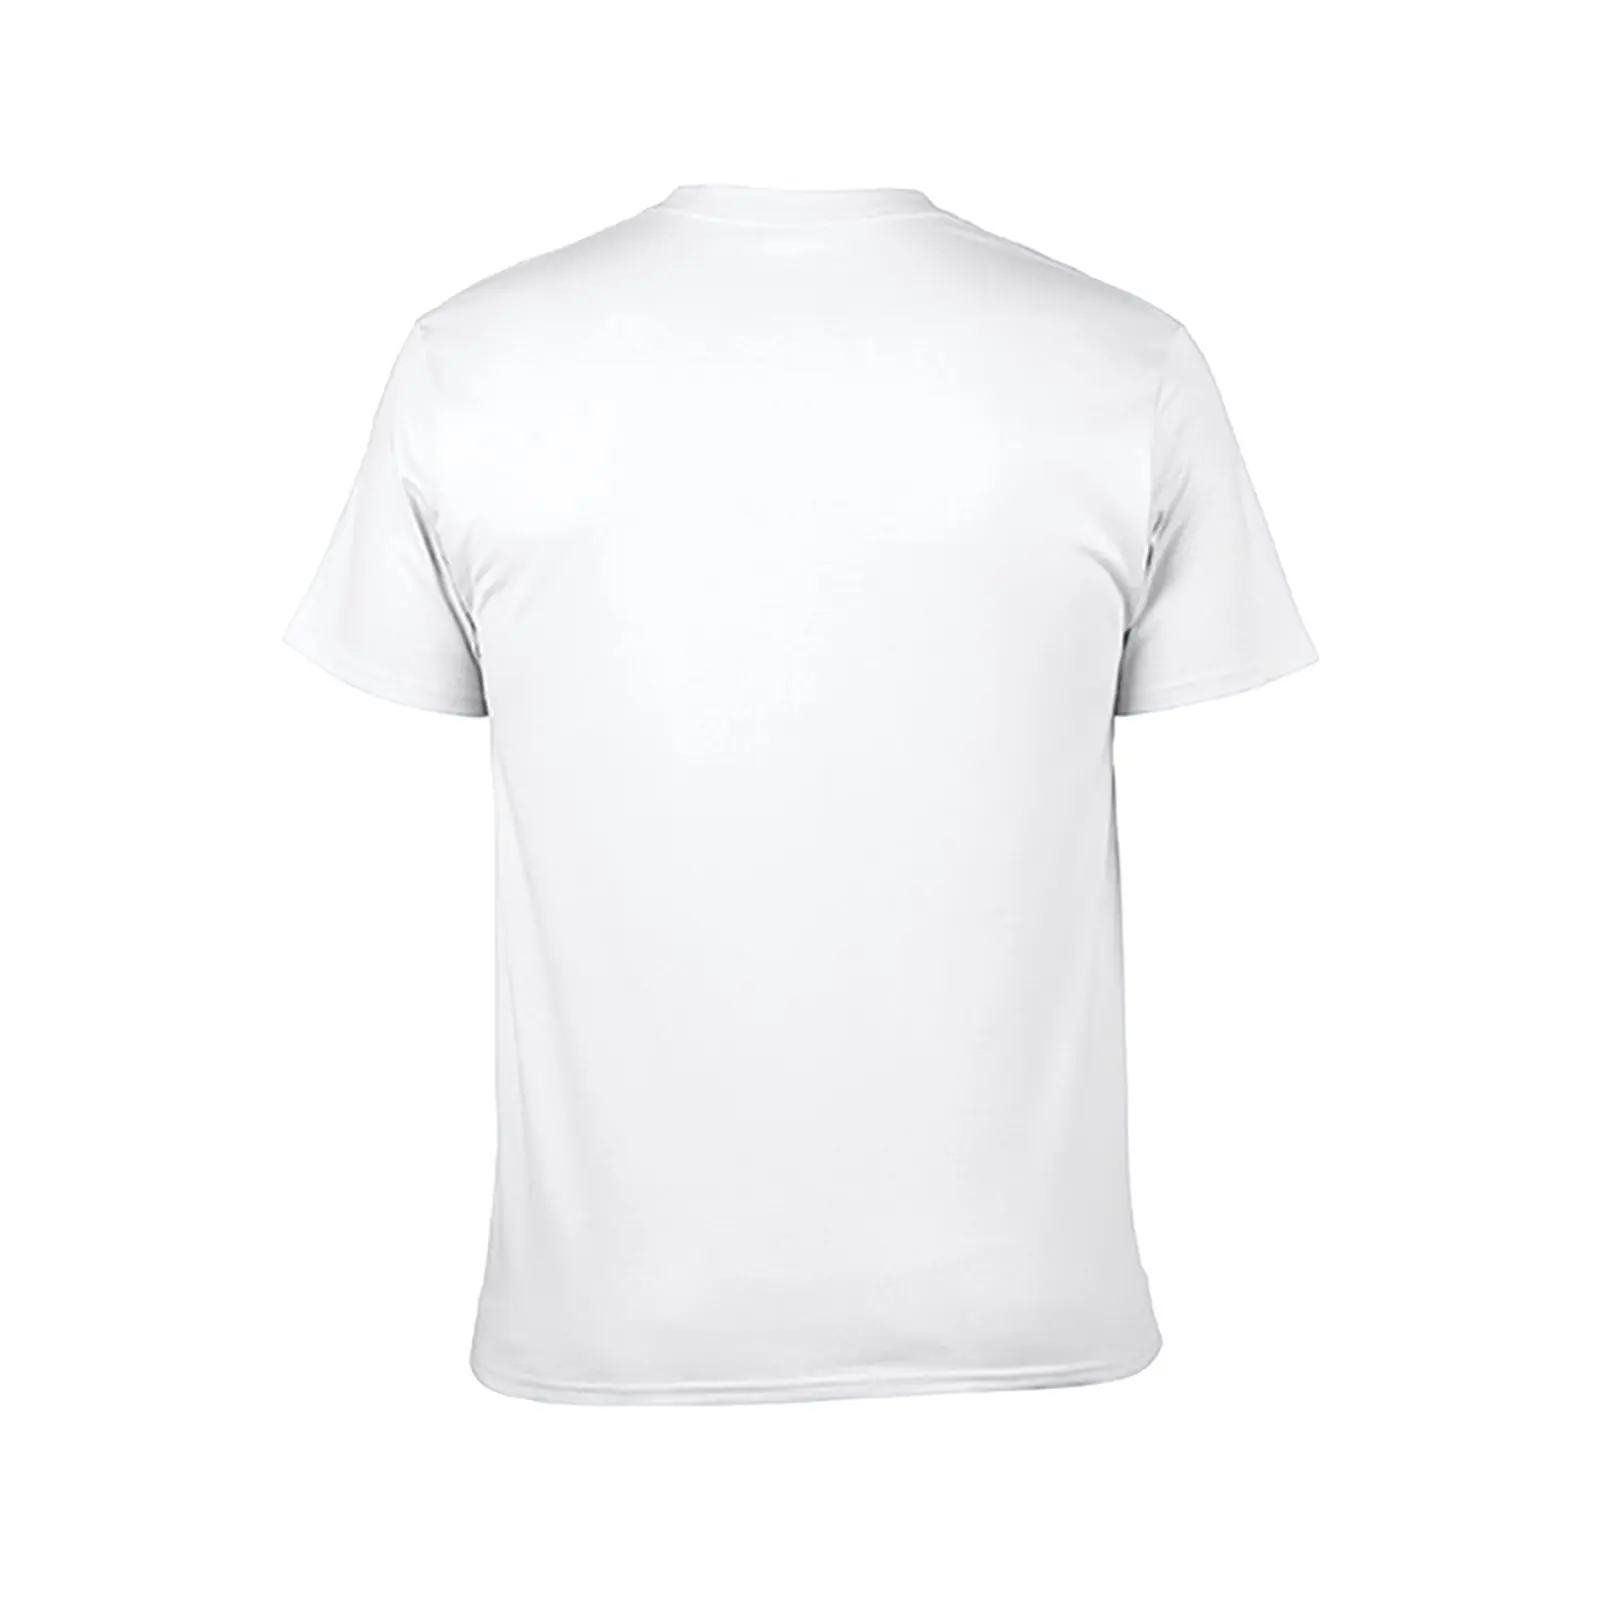 Футболка Sakura Q, спортивные рубашки, футболка sublime, черная футболка, мужские футболки - 2